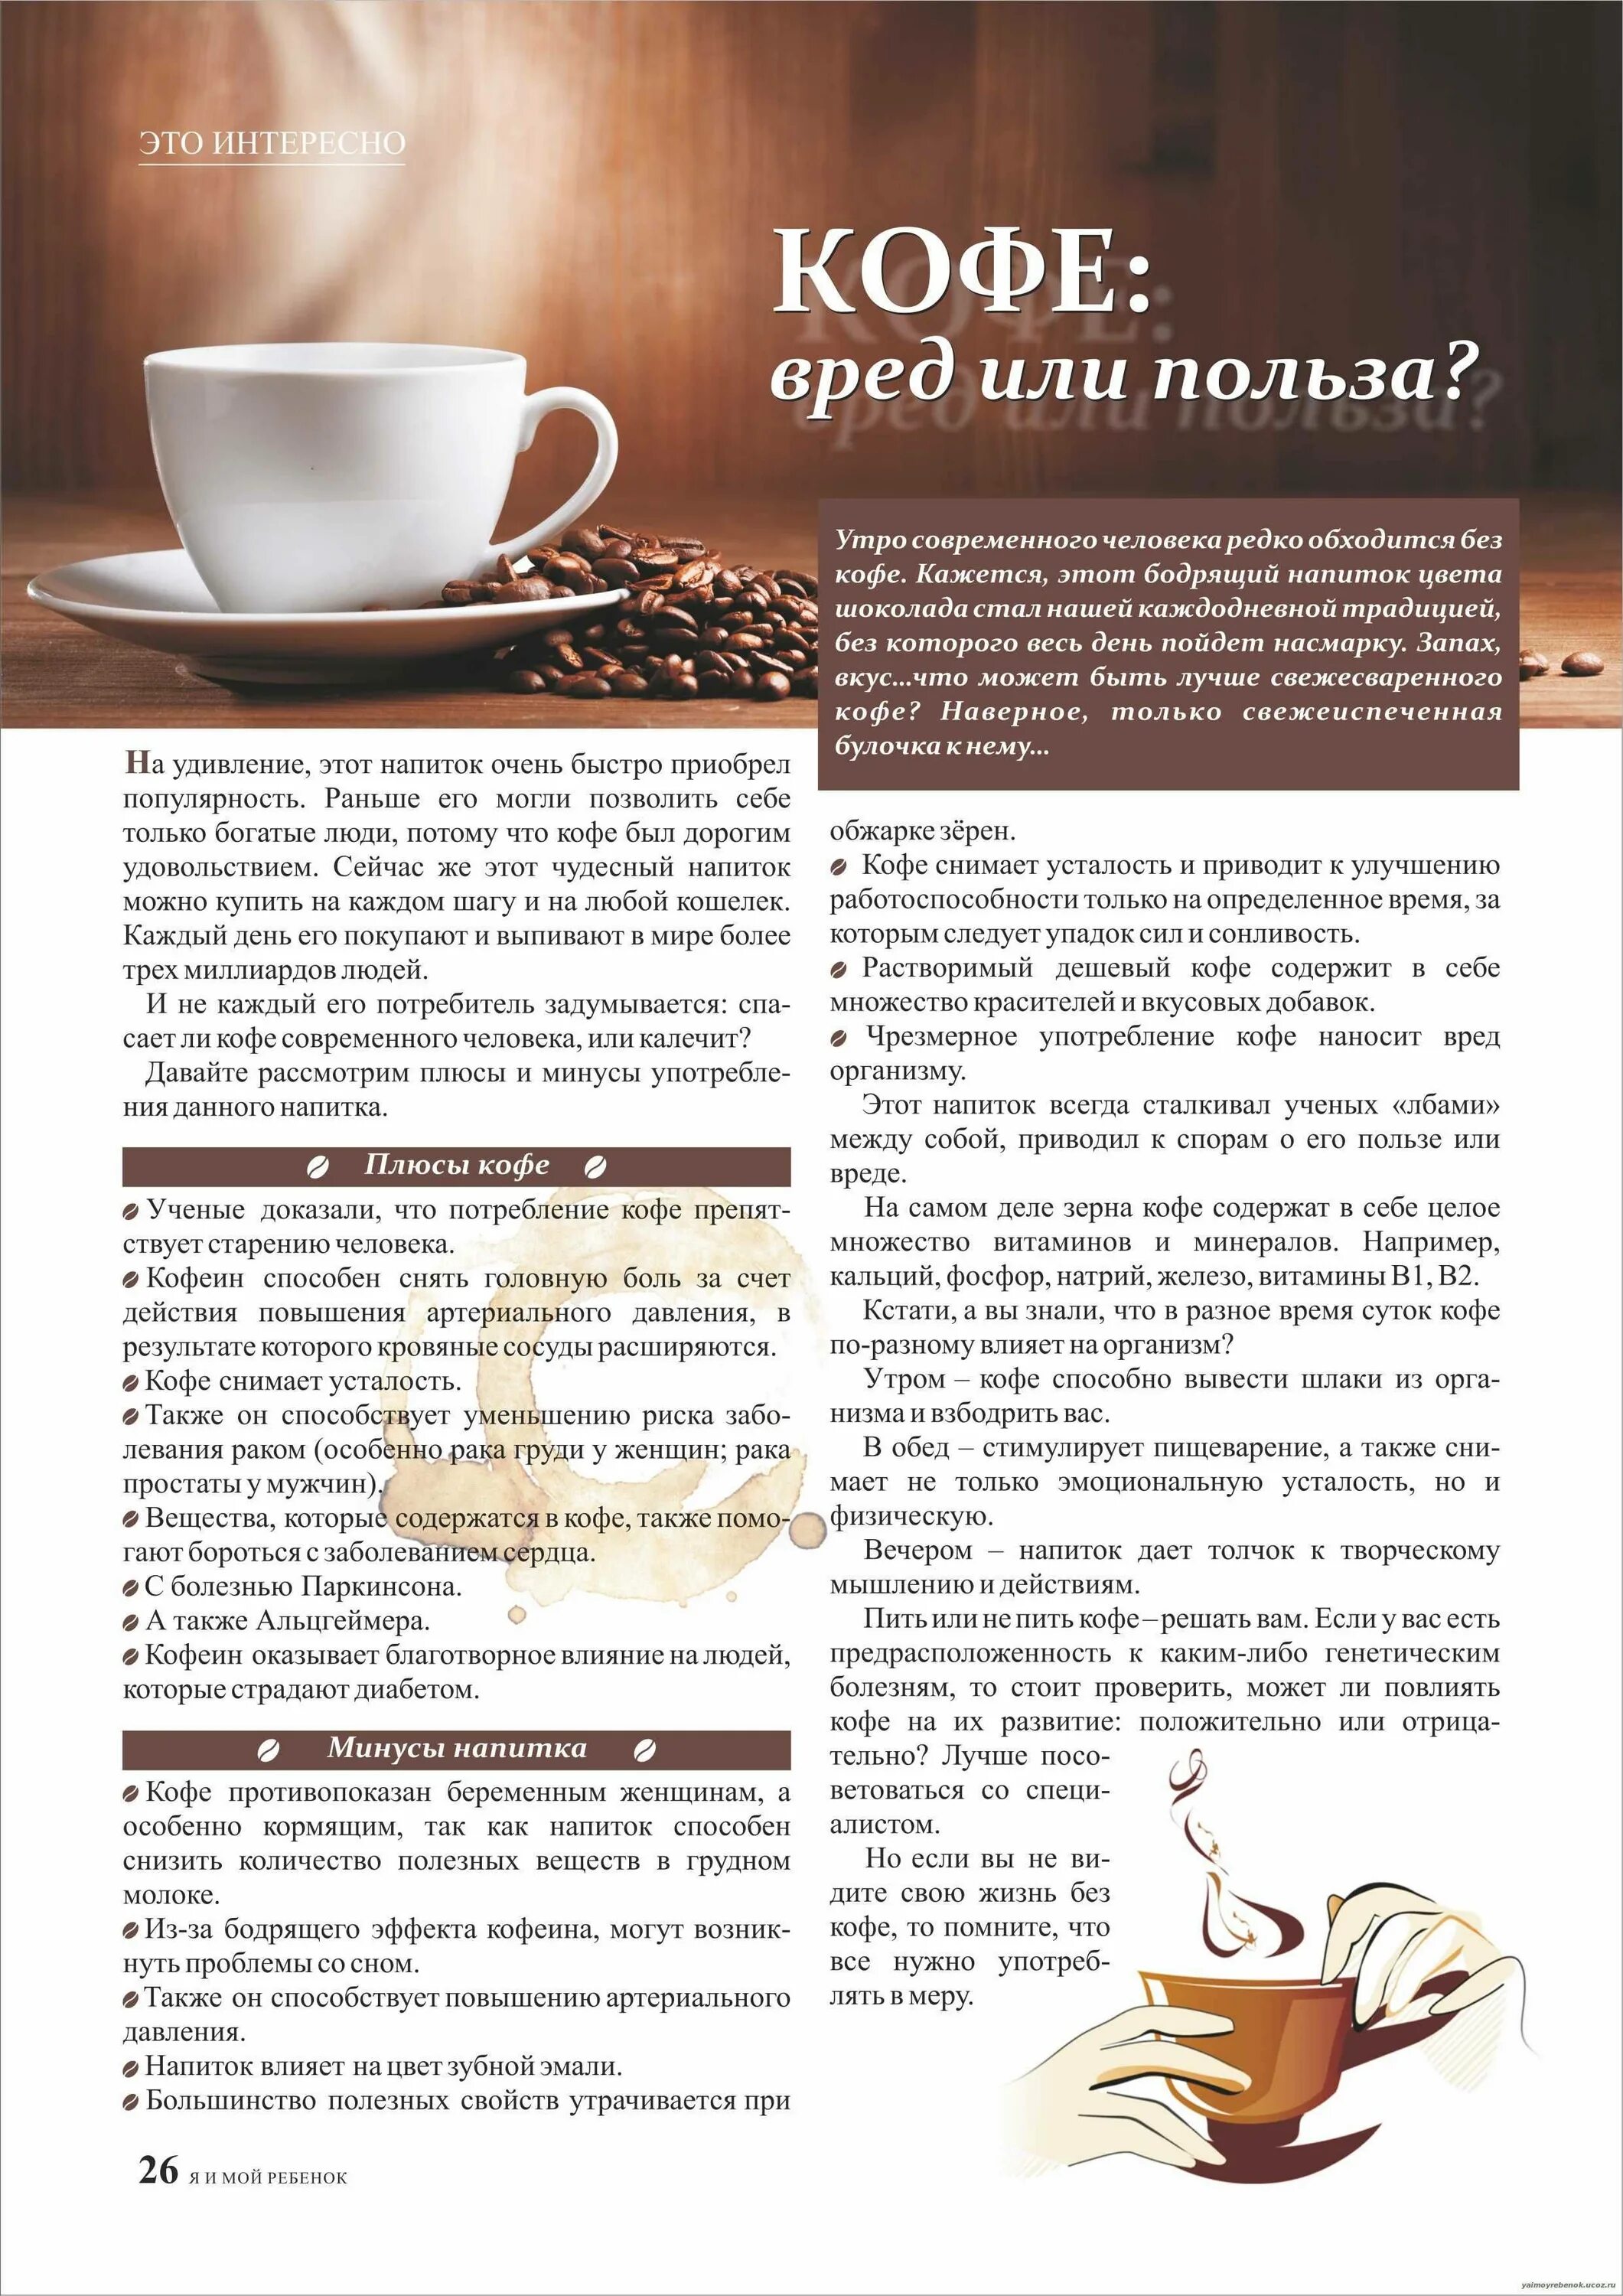 Можно ли при низком давлении пить кофе. Кофе полезно для организма. Польза кофе. Кофе полезно или вредно. Польза и вред кофе.